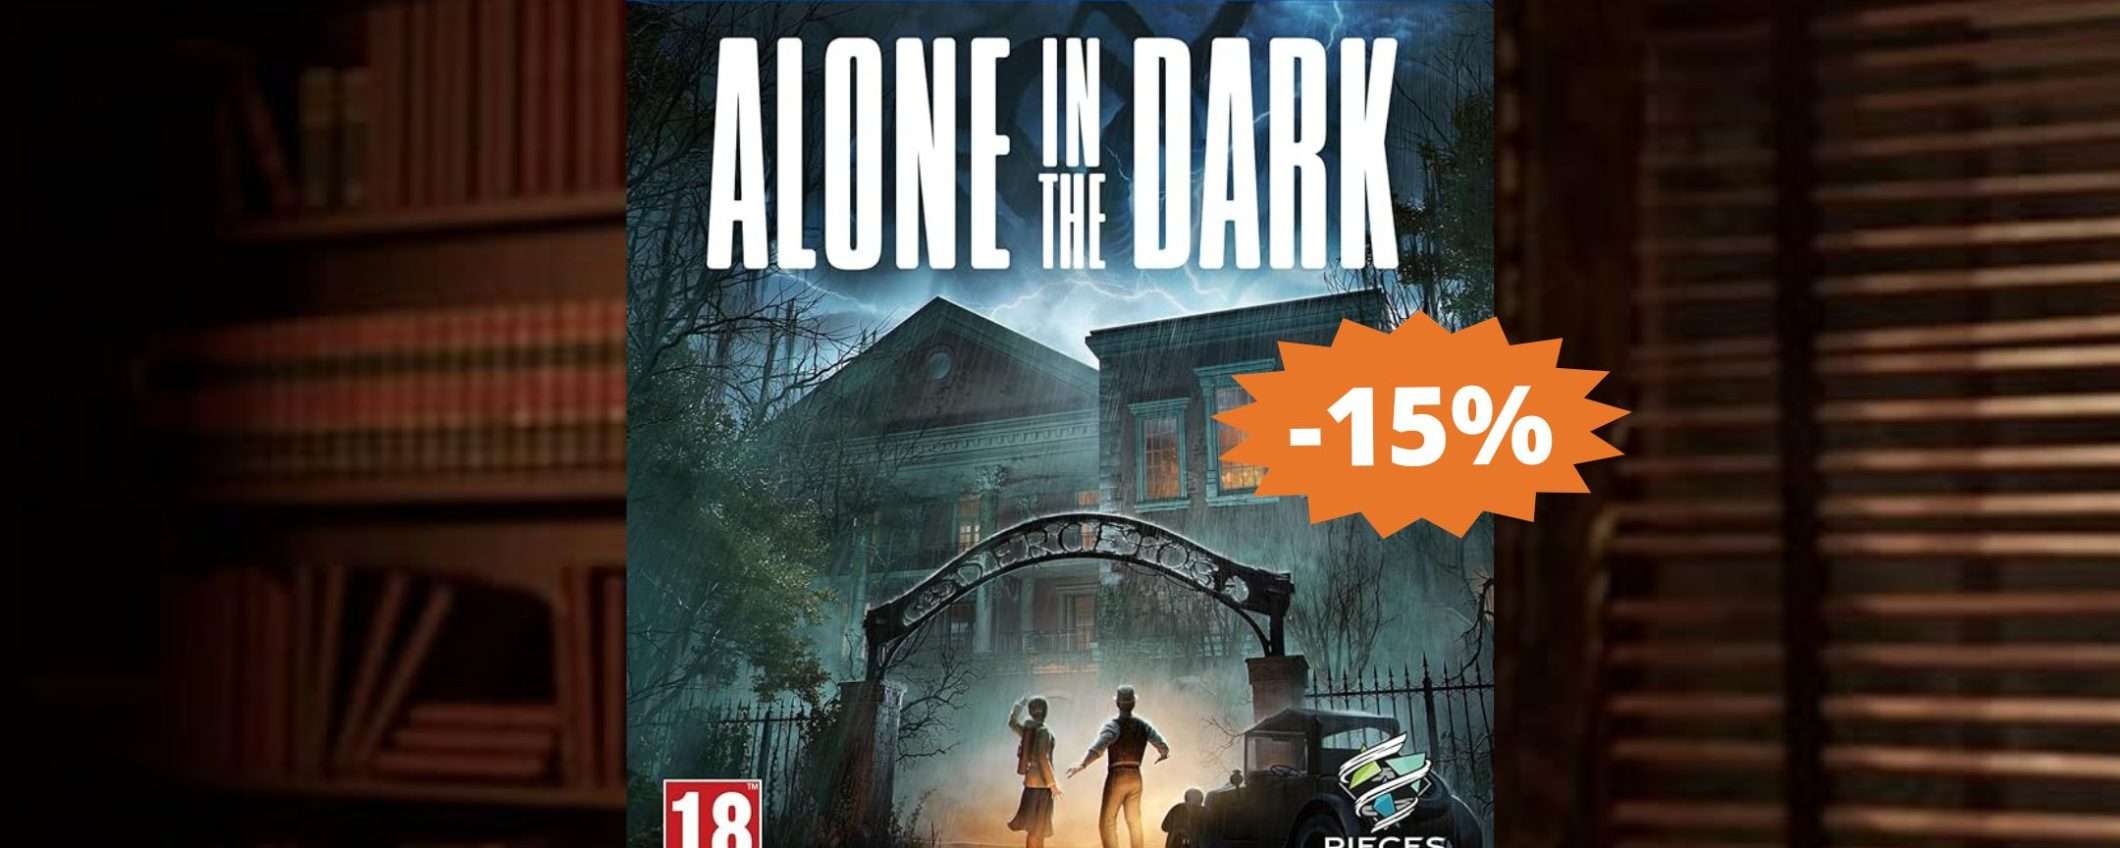 Alone in the Dark per PS5: un'avventura TENEBROSA (-15%)